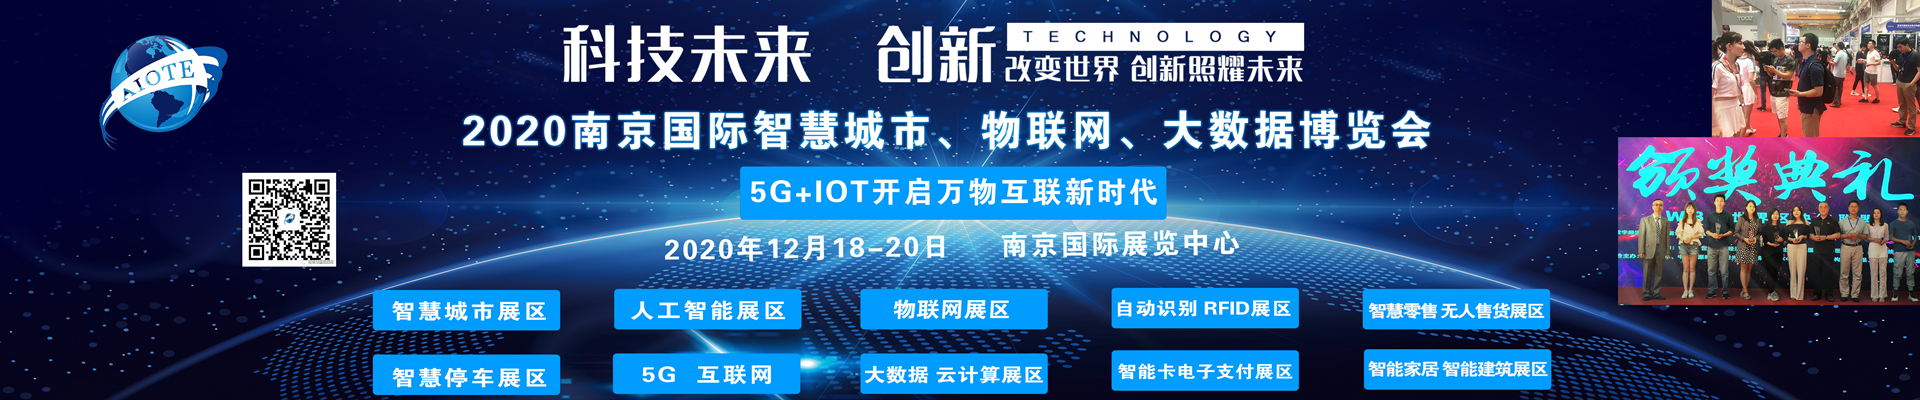 科技未来2020南京数博会 - 3DCAT实时渲染云平台